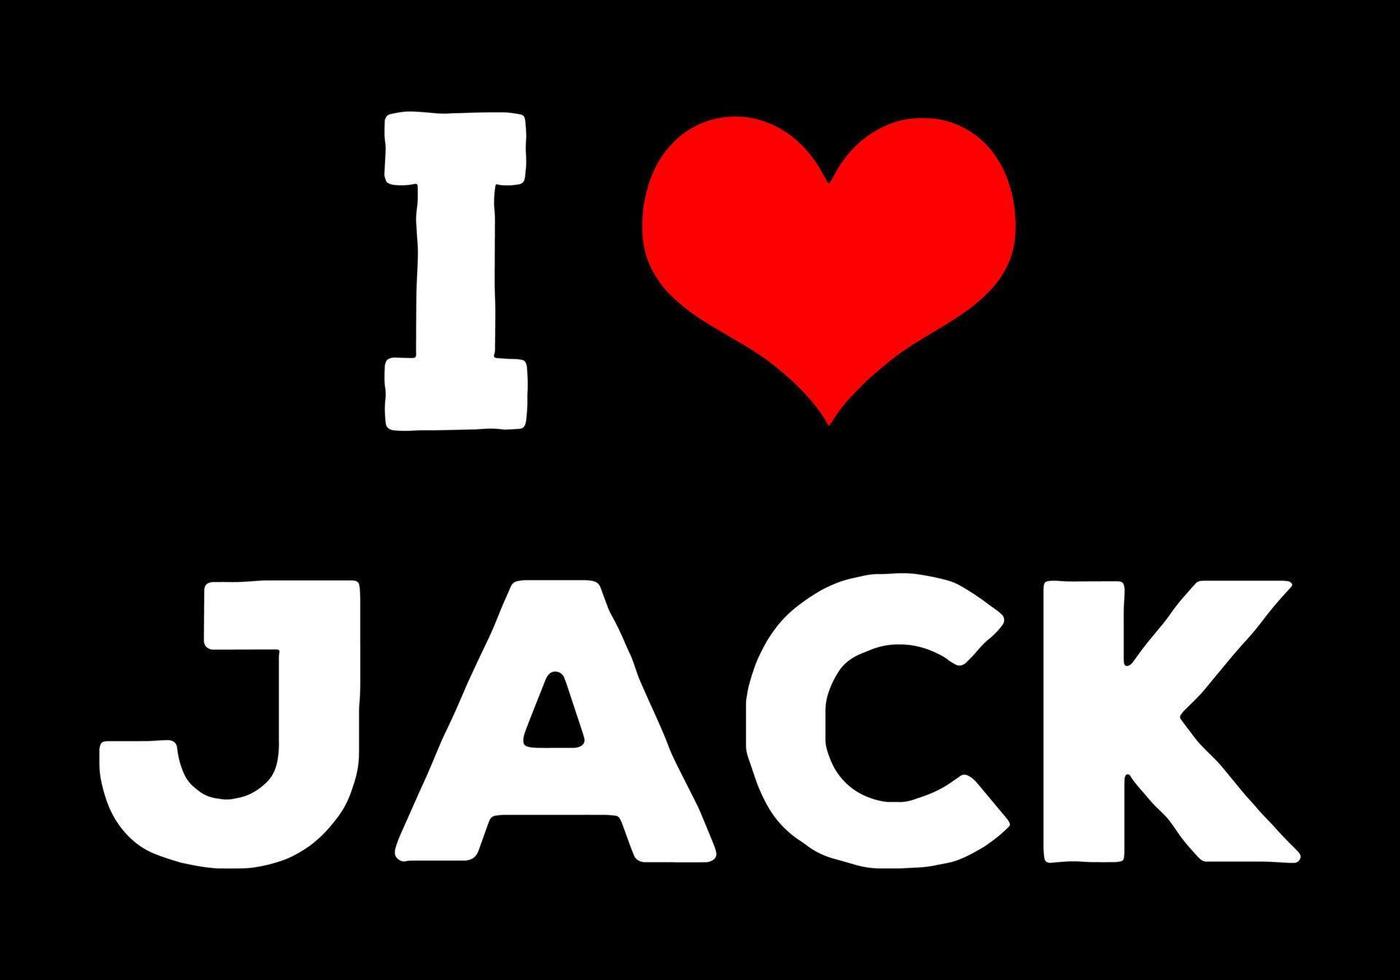 io amore Jack. Jack nome testo parola con amore cuore. vettore